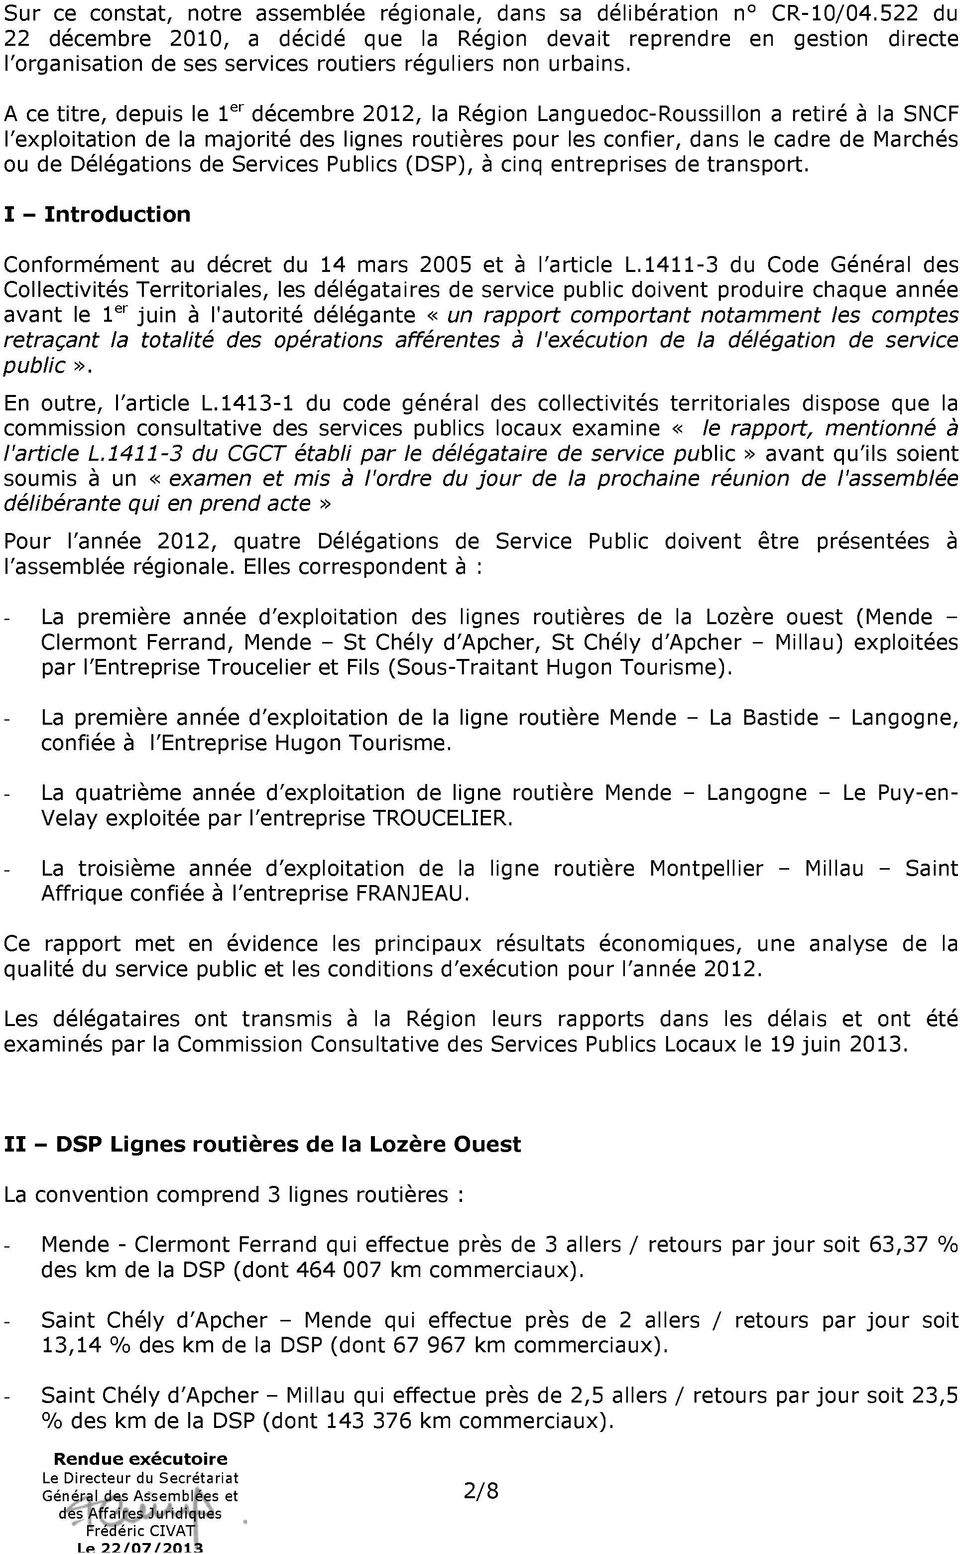 A ce titre, depuis le 1 er décembre 2012, la Région Languedoc-Roussillon a retiré à la SNCF l exploitation de la majorité des lignes routières pour les confier, dans le cadre de Marchés ou de